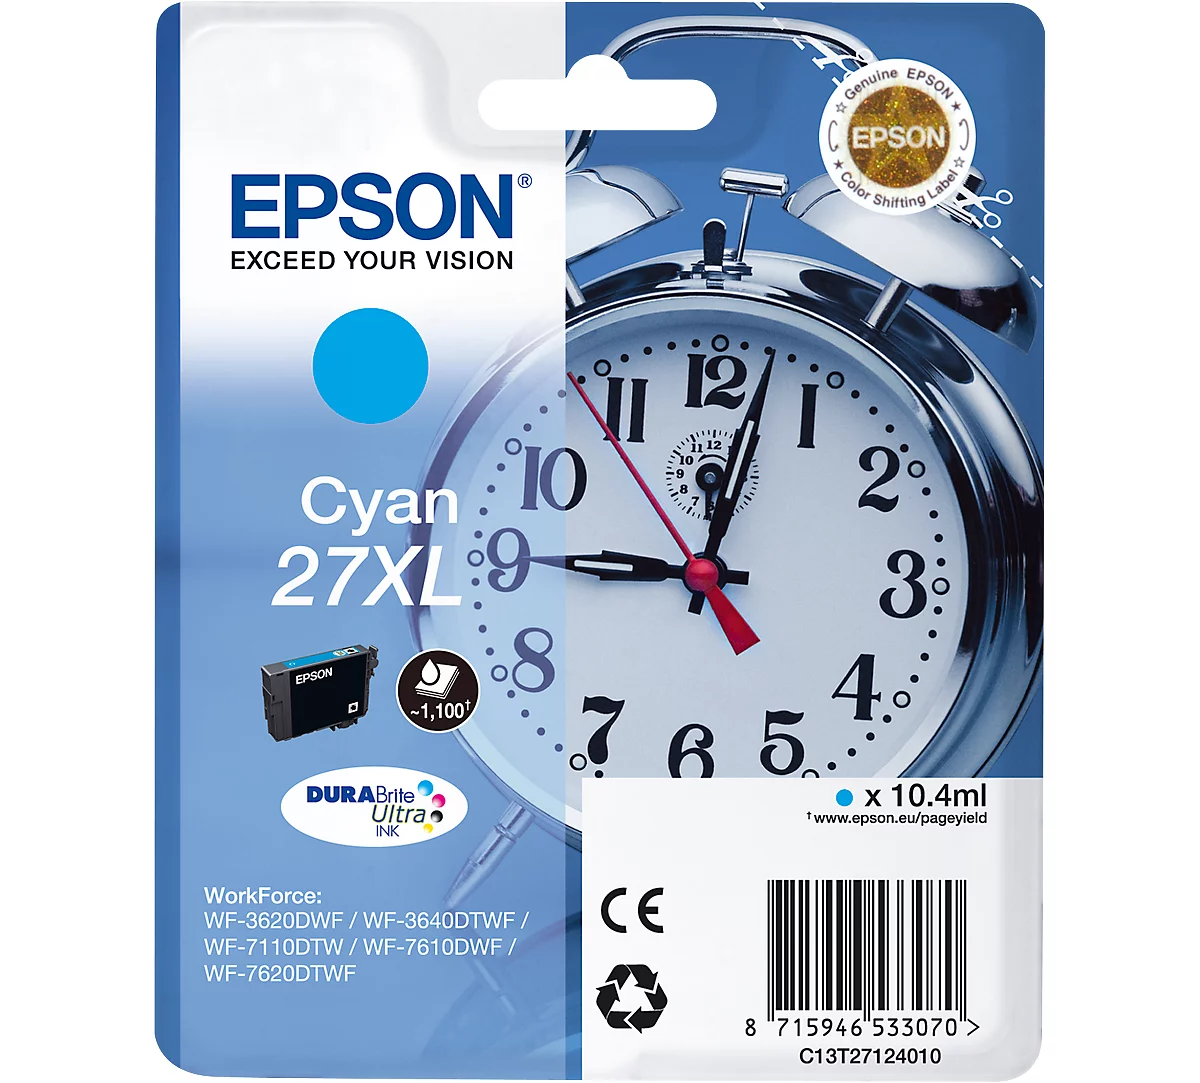 Original Epson Tintenpatrone 27XL, Einzelpack, cyan